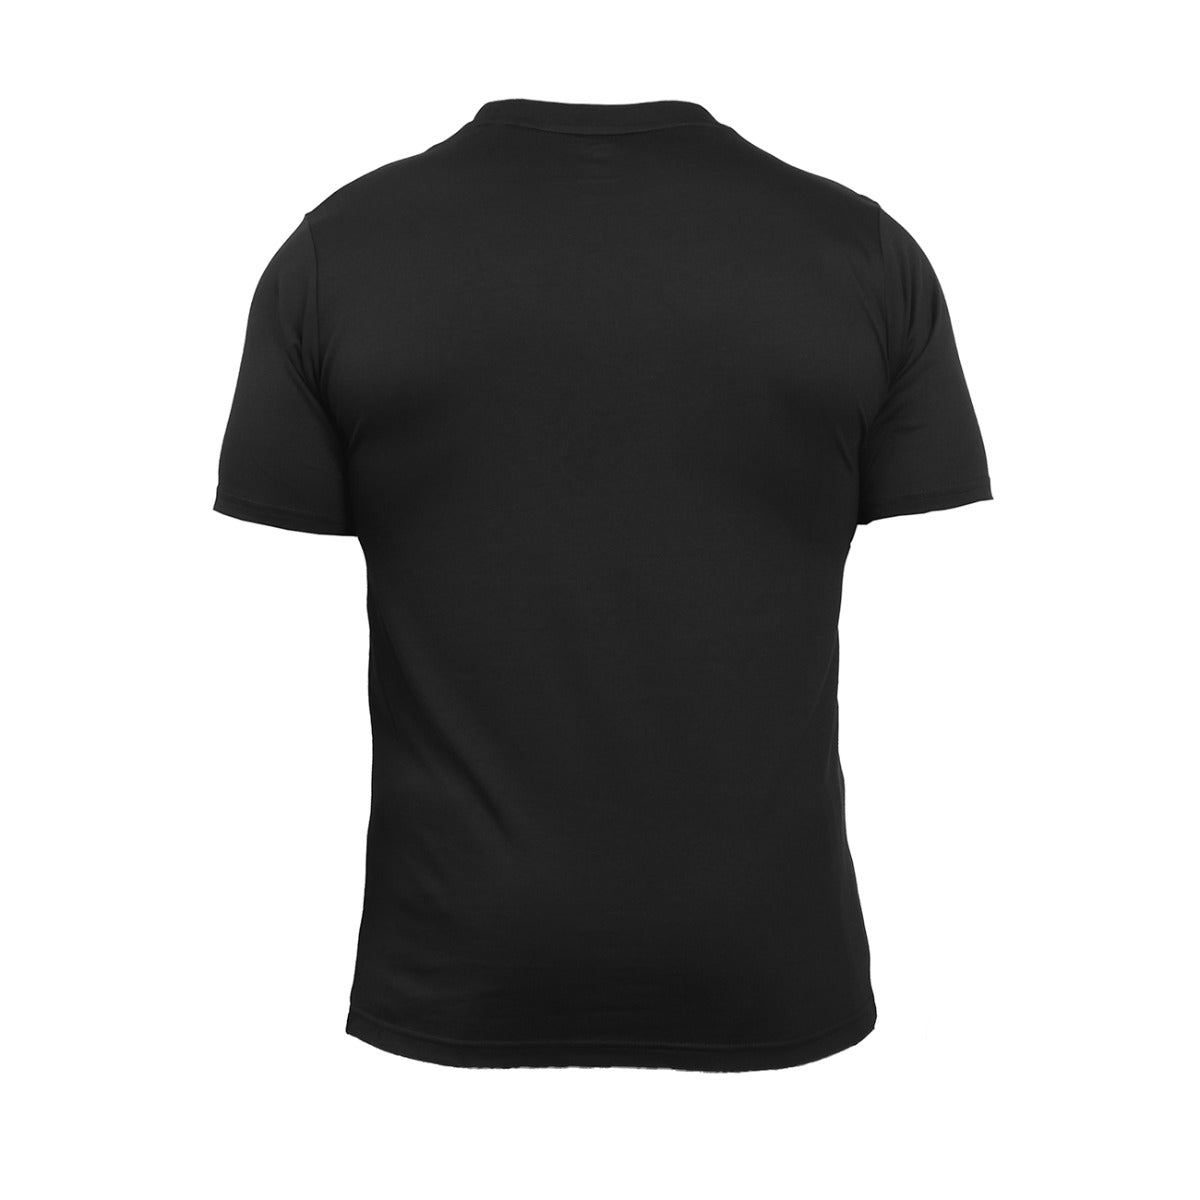 Anta Cross Training T-Shirt For Men, Black